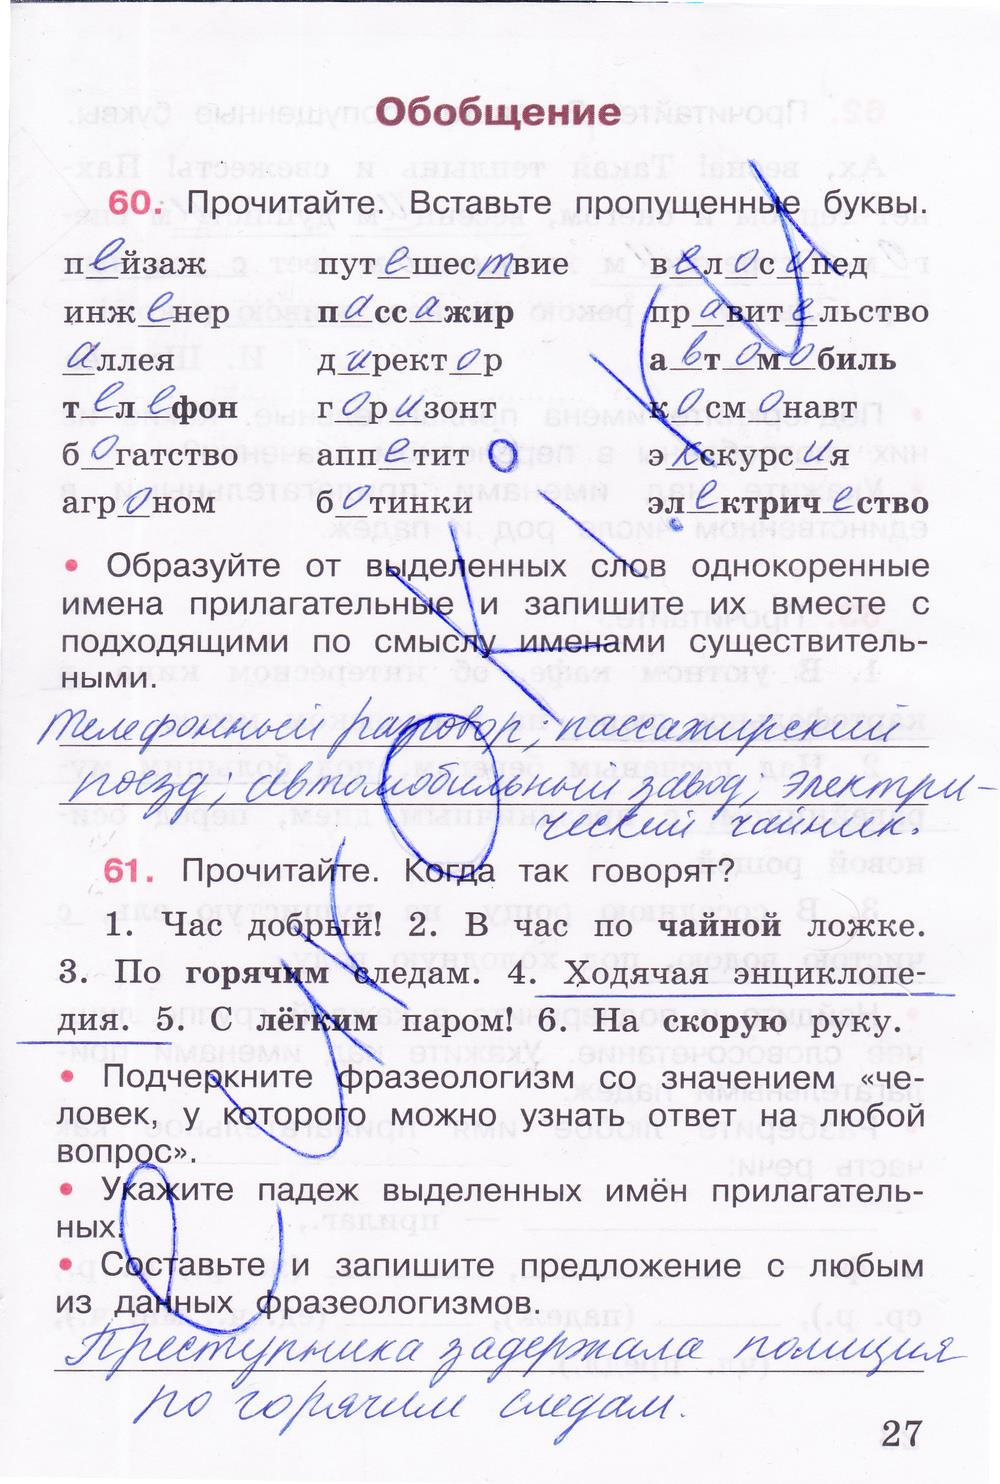 гдз 4 класс рабочая тетрадь часть 2 страница 27 русский язык Канакина